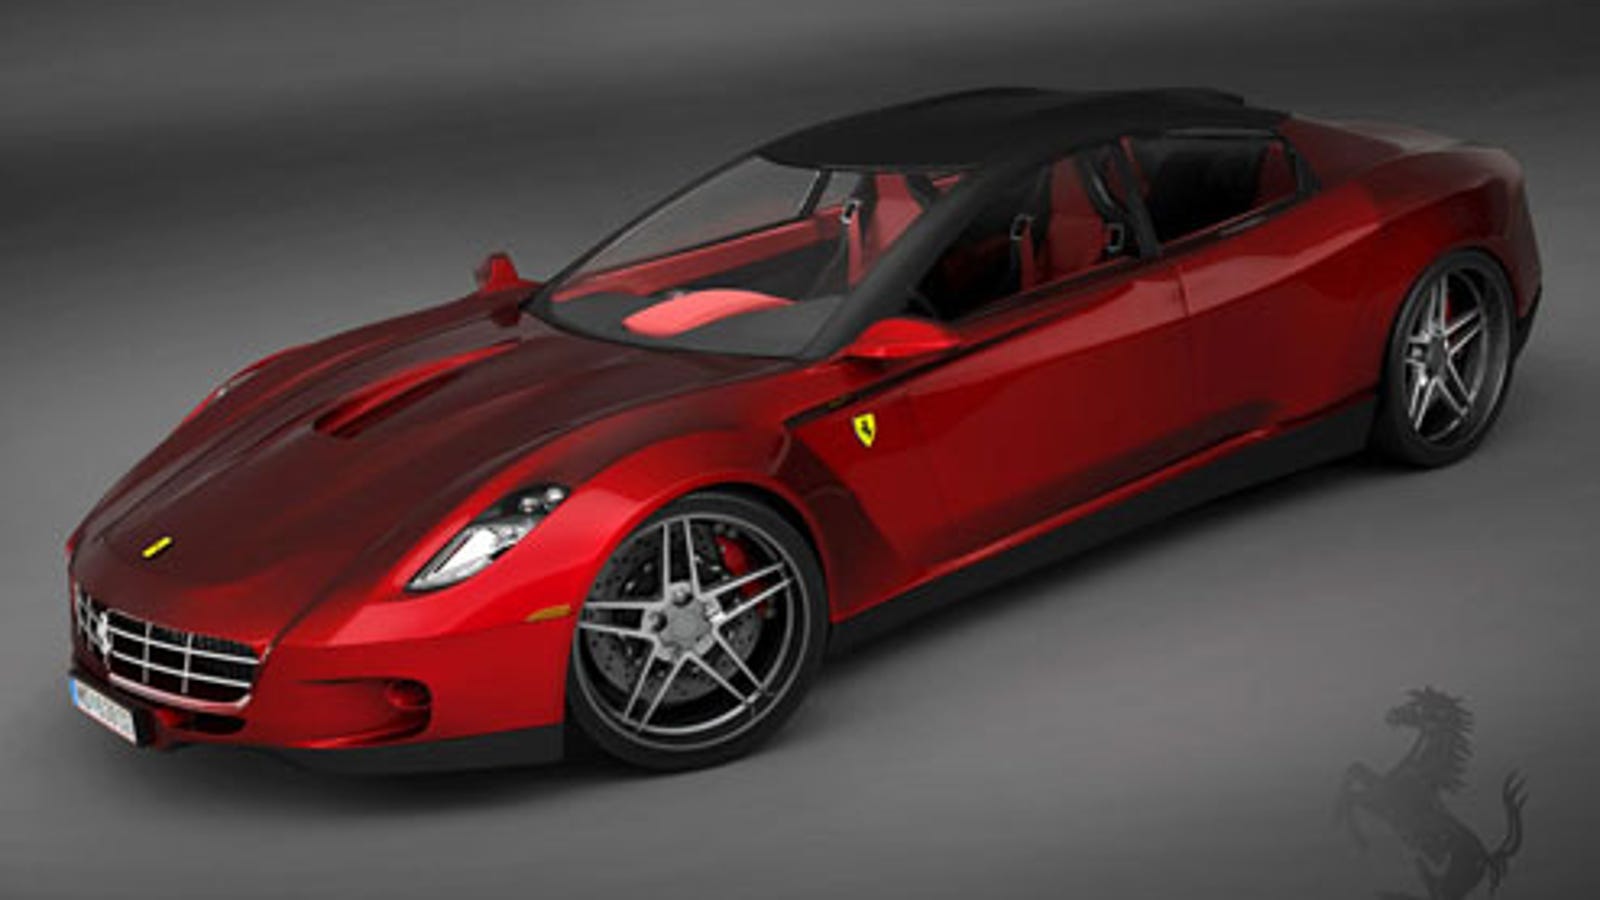 Ferrari Sedan Designed By Fanboy; We'll Take A Pinin Instead